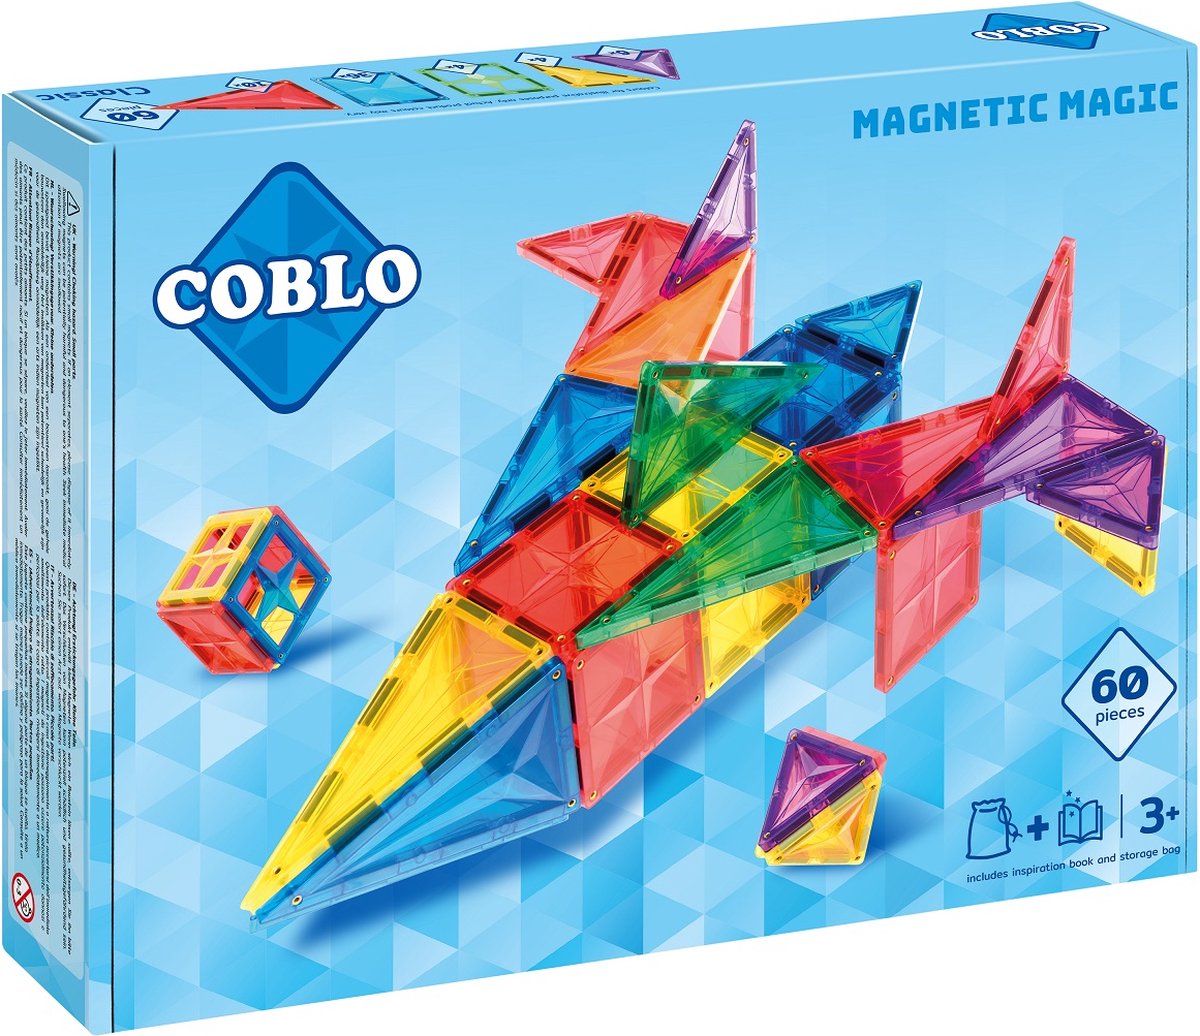 Coblo Classic - 60 stuks - Magnetisch speelgoed - Inclusief opbergtas & inspiratieboekje - Montessori speelgoed